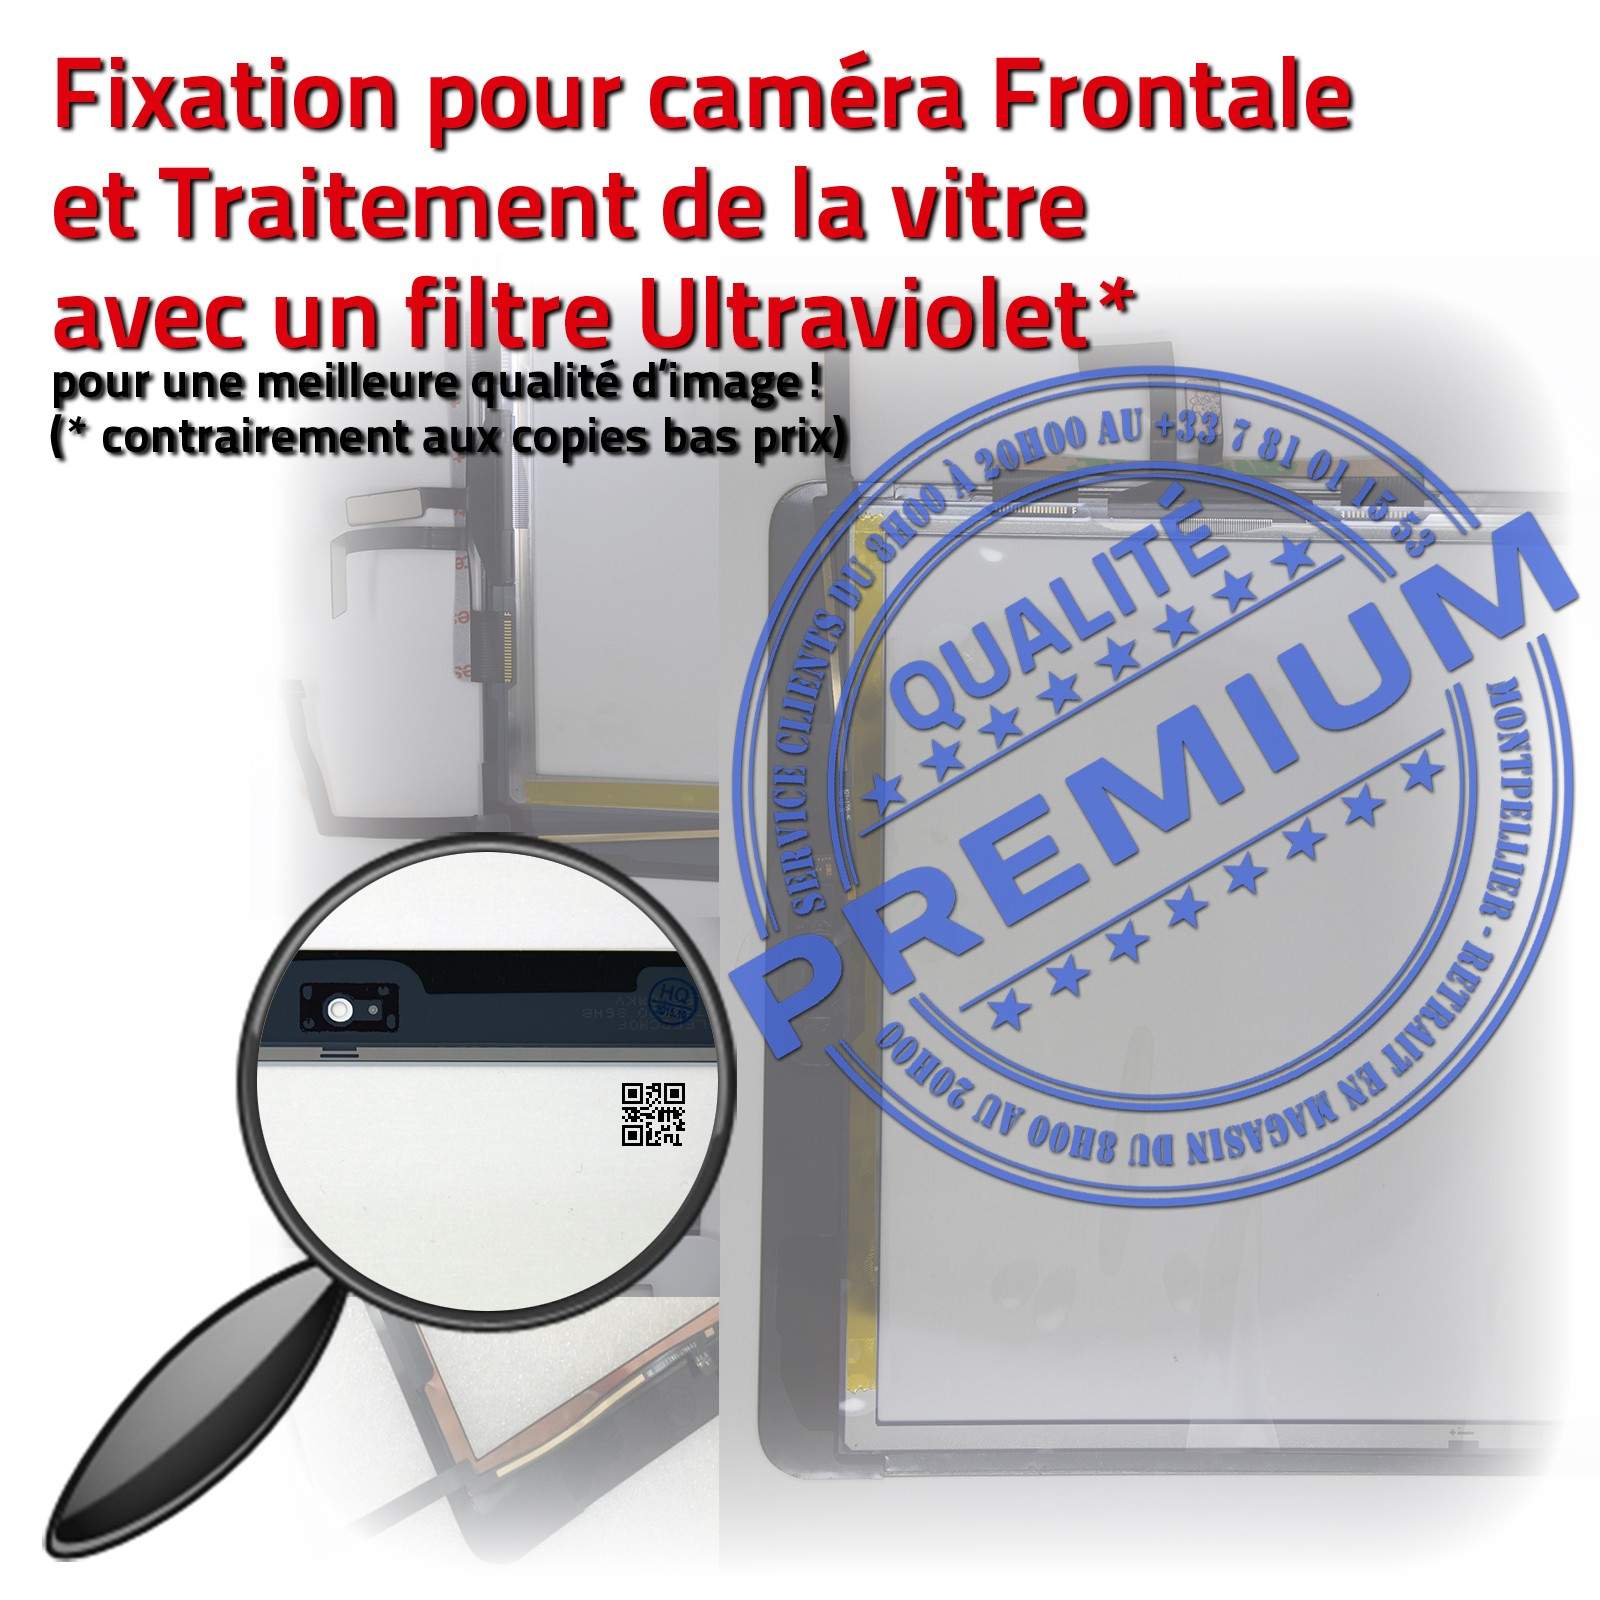 Vitre Tactile iPad 6 - A1893 Noir Adhésif Monté Ecran Qualité Verre  Oléophobe Fixation Caméra Nappe HOME IC Réparation Tablette